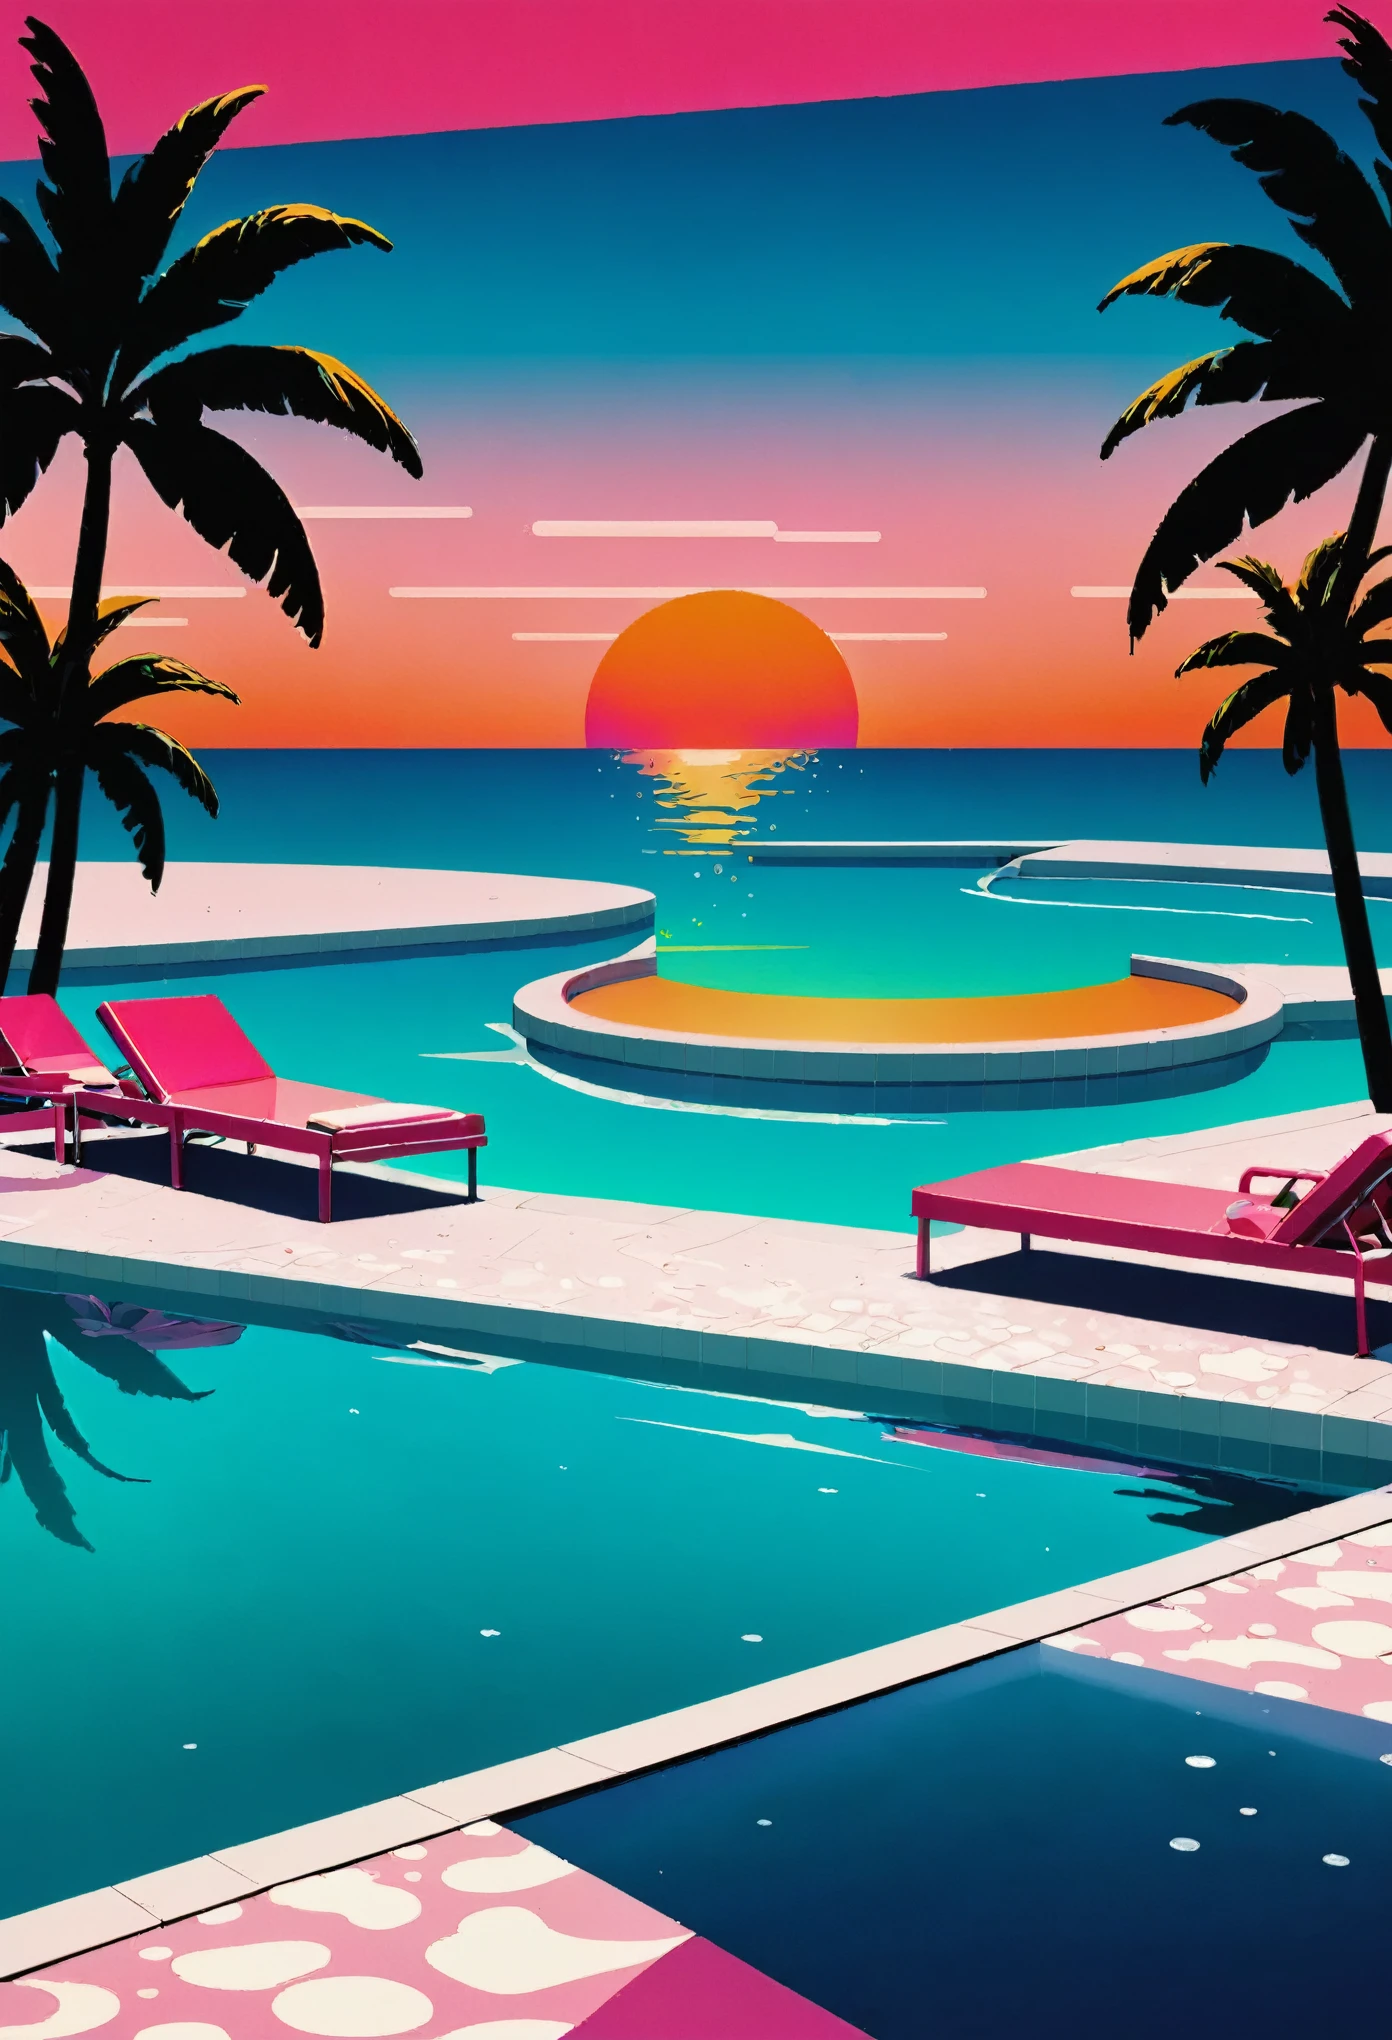 Crea una obra de arte profundamente inmersa en la estética vaporwave de los años 80., fuertemente influenciado por el vívido estilo artístico de Yoko Honda, adoptando un enfoque minimalista. Imagine una escena retrofuturista de playa y piscina capturada al atardecer, ilustrado en 2D, perspectiva plana sin puntos de fuga. El cielo brilla con intensos tonos naranjas., rosa, y rojo: colores vibrantes que se reflejan en las tranquilas aguas del mar y la piscina., produciendo un efecto visualmente cautivador. alrededor de la piscina, Incluye palmeras y cocoteros iluminados con luces de neón., renderizado de forma estilizada, forma simple para realzar el ambiente tropical y de otro mundo con ubicaciones escasas pero llamativas. Decora el área de la piscina con extravagantes flotadores con temática de los 80, como flamencos de neón y unicornios, añadiendo un toque divertido y nostálgico. Además, integra luces de neón geométricas que proyectan un brillo surrealista en la escena, proporcionando una iluminación mínima pero eficaz. El entorno presenta un elegante, Bar minimalista junto a la playa visible detrás de grandes, ventanas de vidrio plano. adentro, el bar debe exhibir paredes y pisos de colores pastel adornados con lujosas texturas de terrazo y mármol, logrado utilizando los pinceles texturizados característicos de Yoko Honda para crear una superficie táctil y visualmente rica. Coloque bebidas y cócteles elegantes al estilo de los años 80 junto a la piscina para enfatizar el estilo de vida de ocio de la década.. Esta escena fusiona el lujo retro con la vibrante, paletas de colores cálidos en un estilo minimalista, composición plana 2D, creando una escena que no sólo es atemporal sino que también recuerda claramente a los años 80 y es fiel al estilo de Yoko Honda..